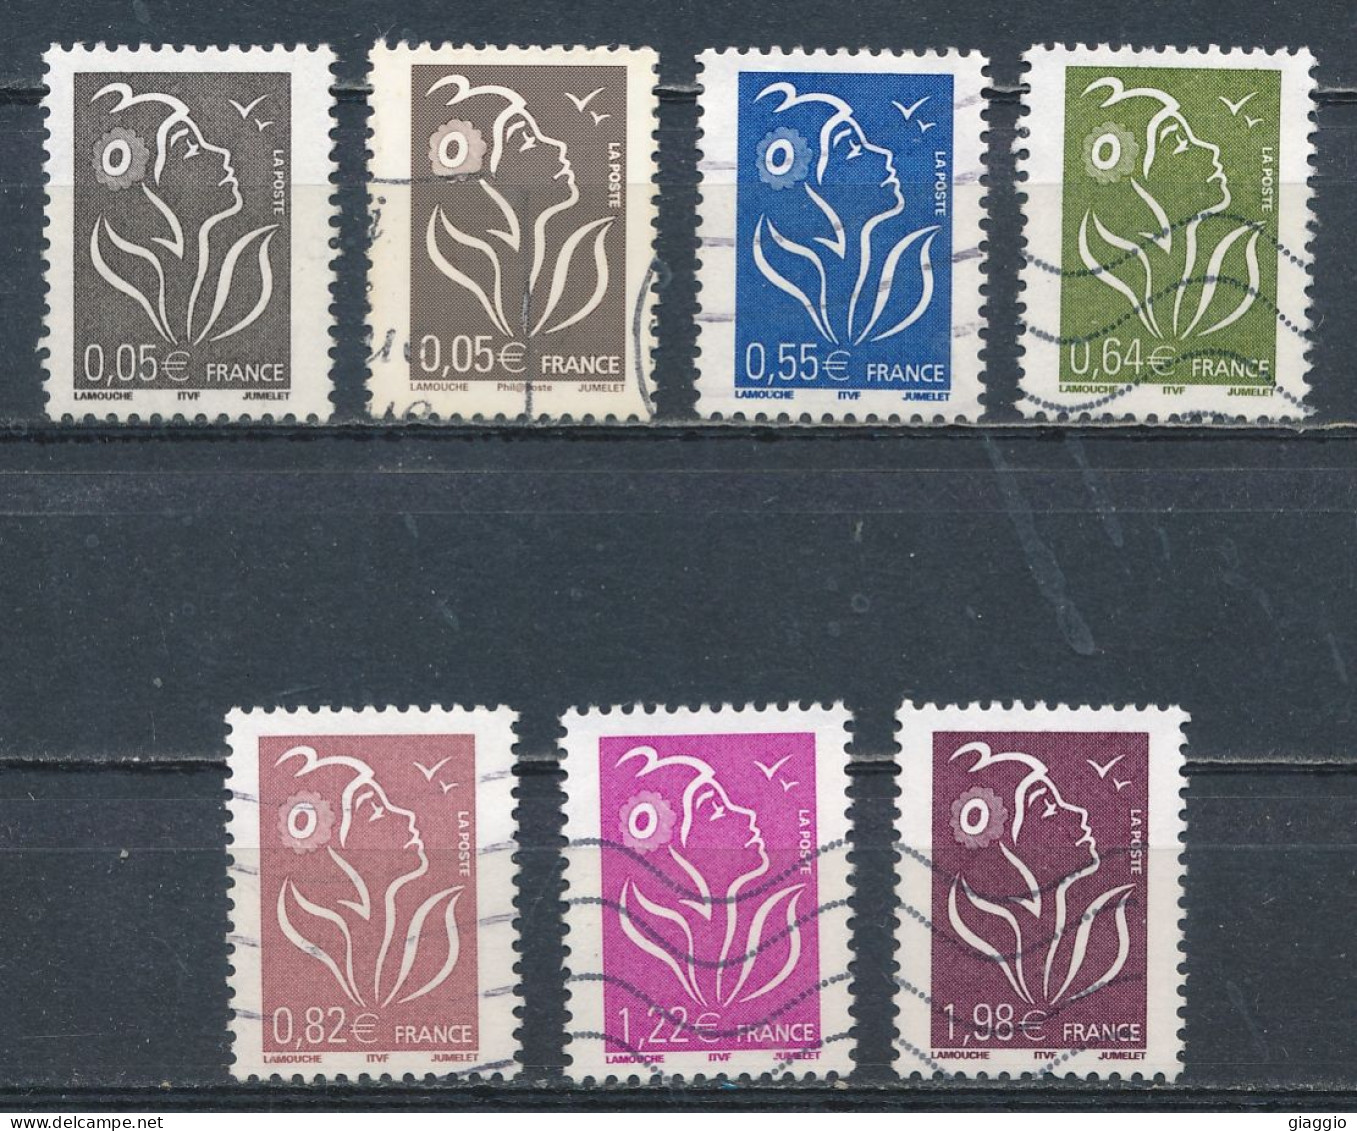 °°° FRANCE - Y&T N° 3754/59 - 2005 °°° - Used Stamps